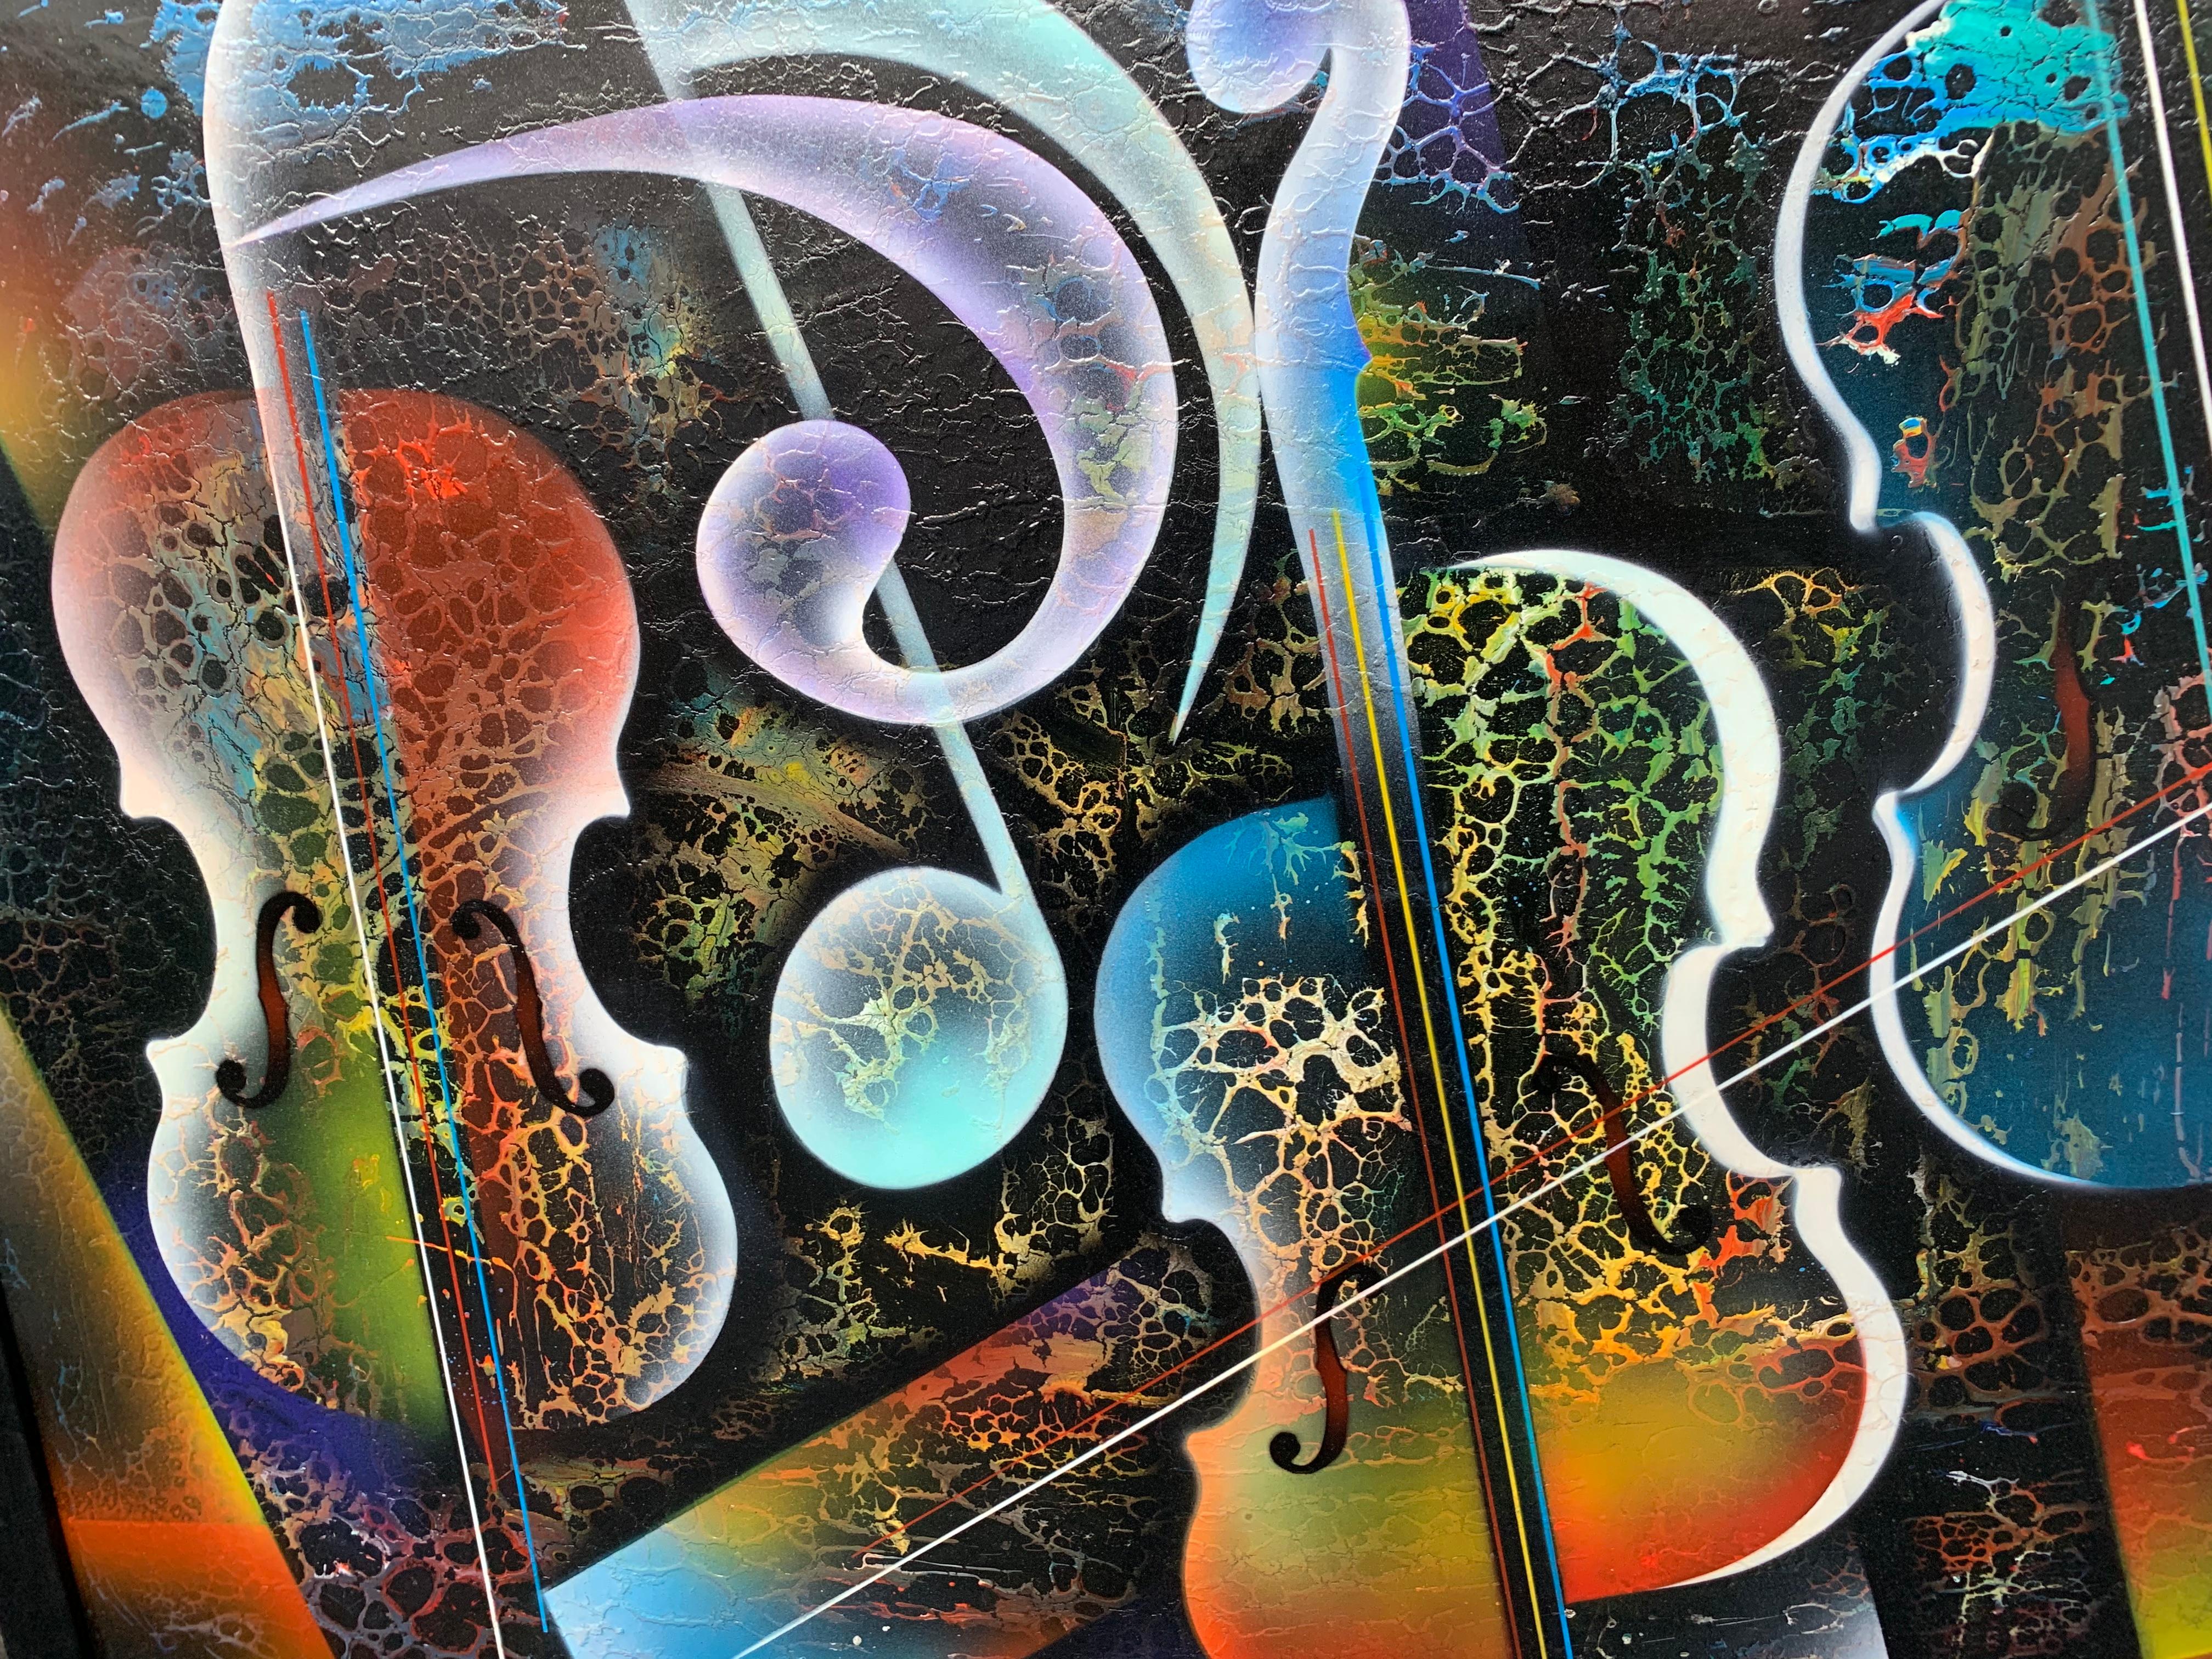 American Violin Painting by Artist Nierman For Sale